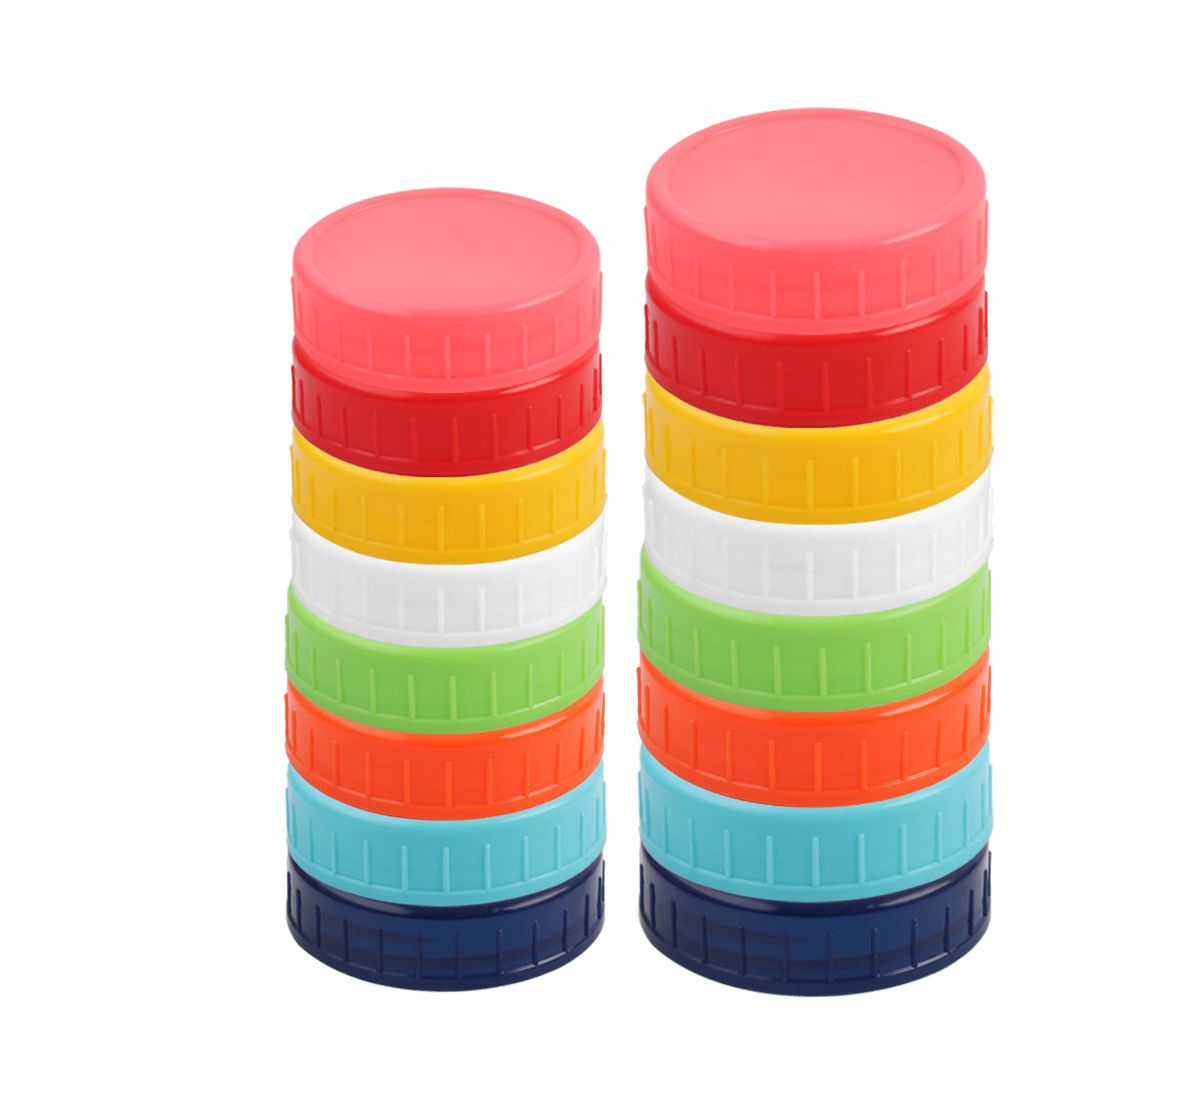 Обычные и широкогорлые консервные банки Mason с крышкой, 16 штук в упаковке, разные цвета Unique Bargains